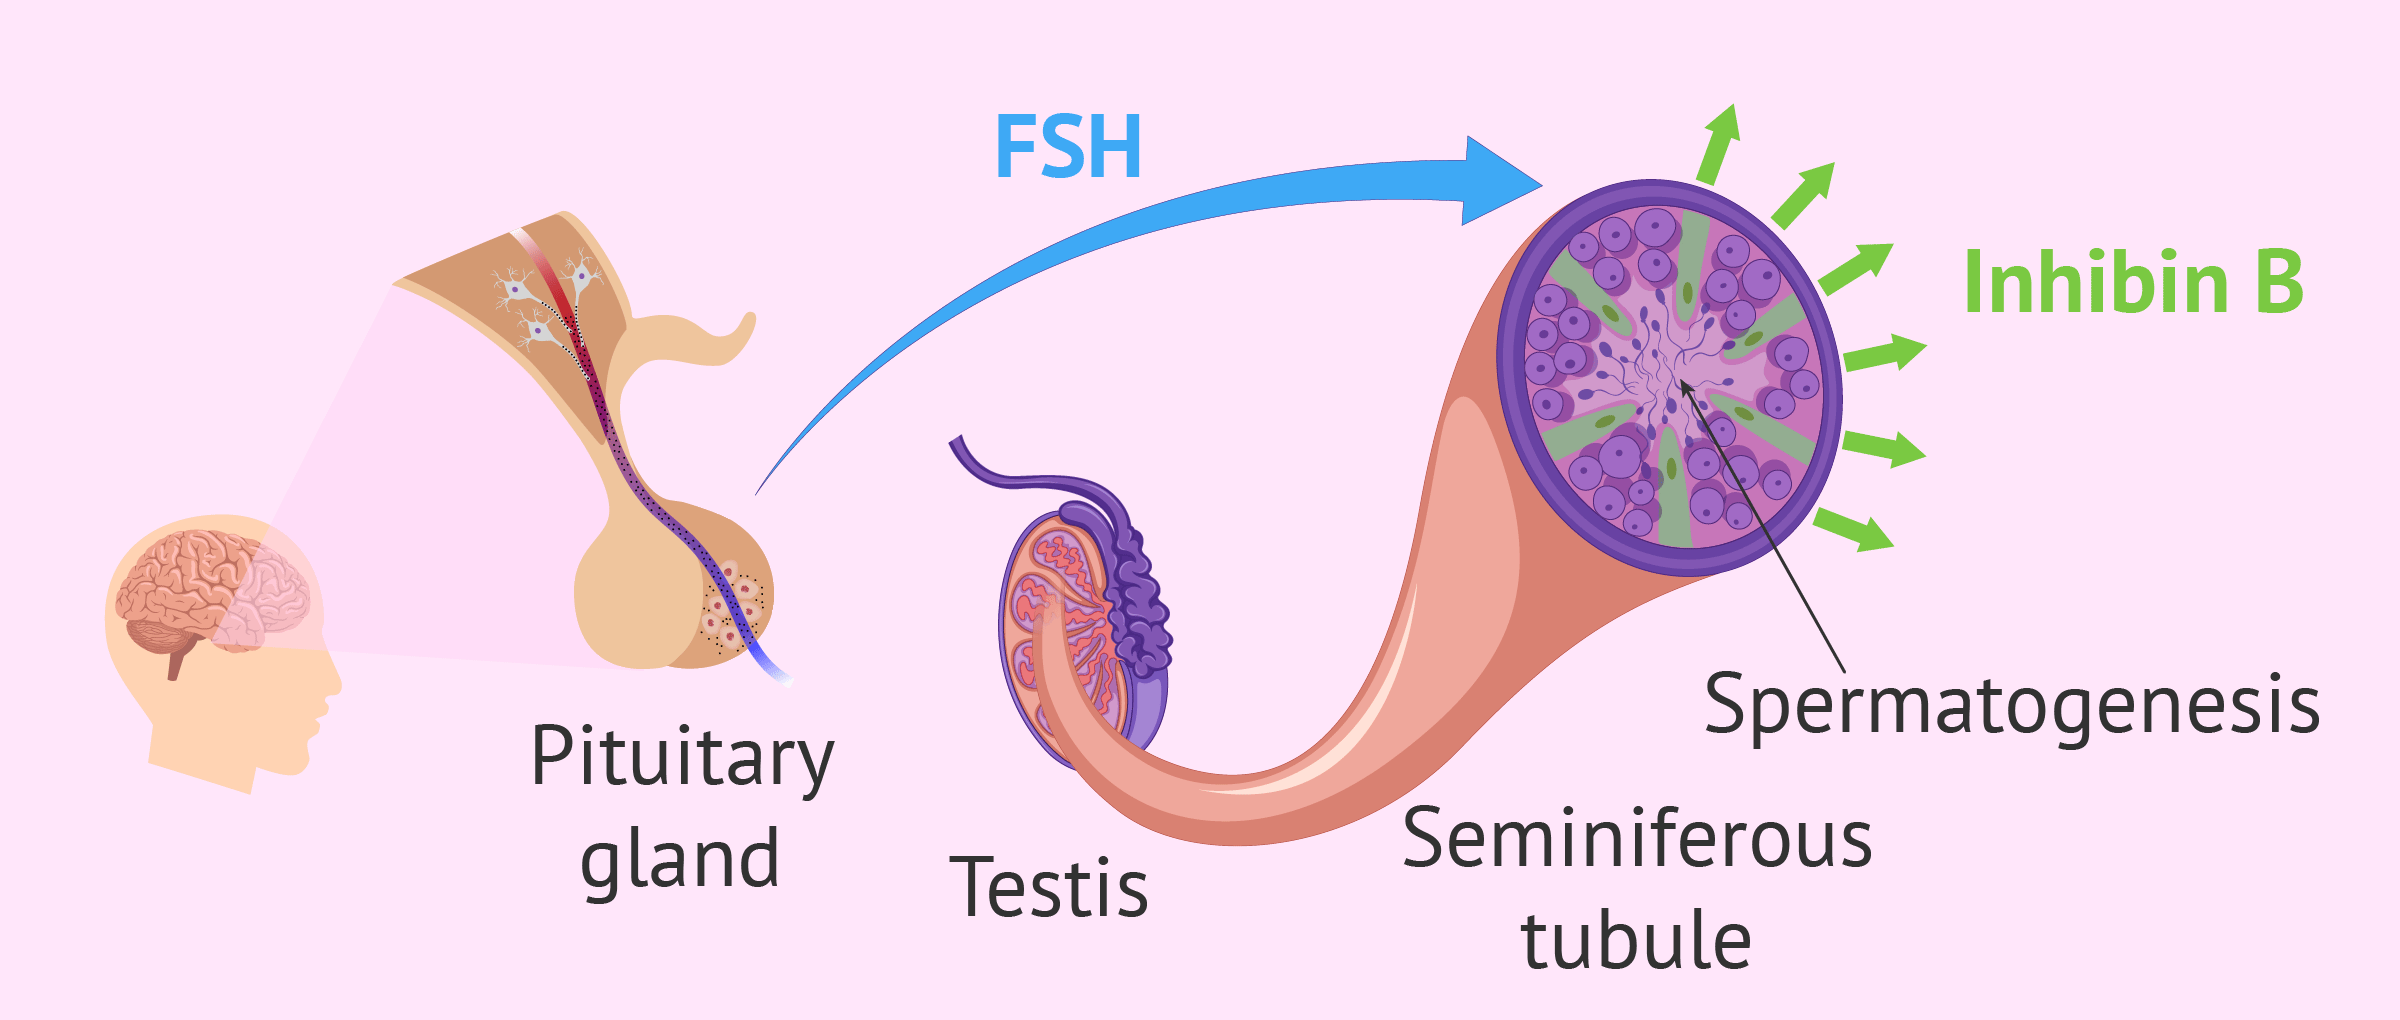 Hormones that control spermatogenesis